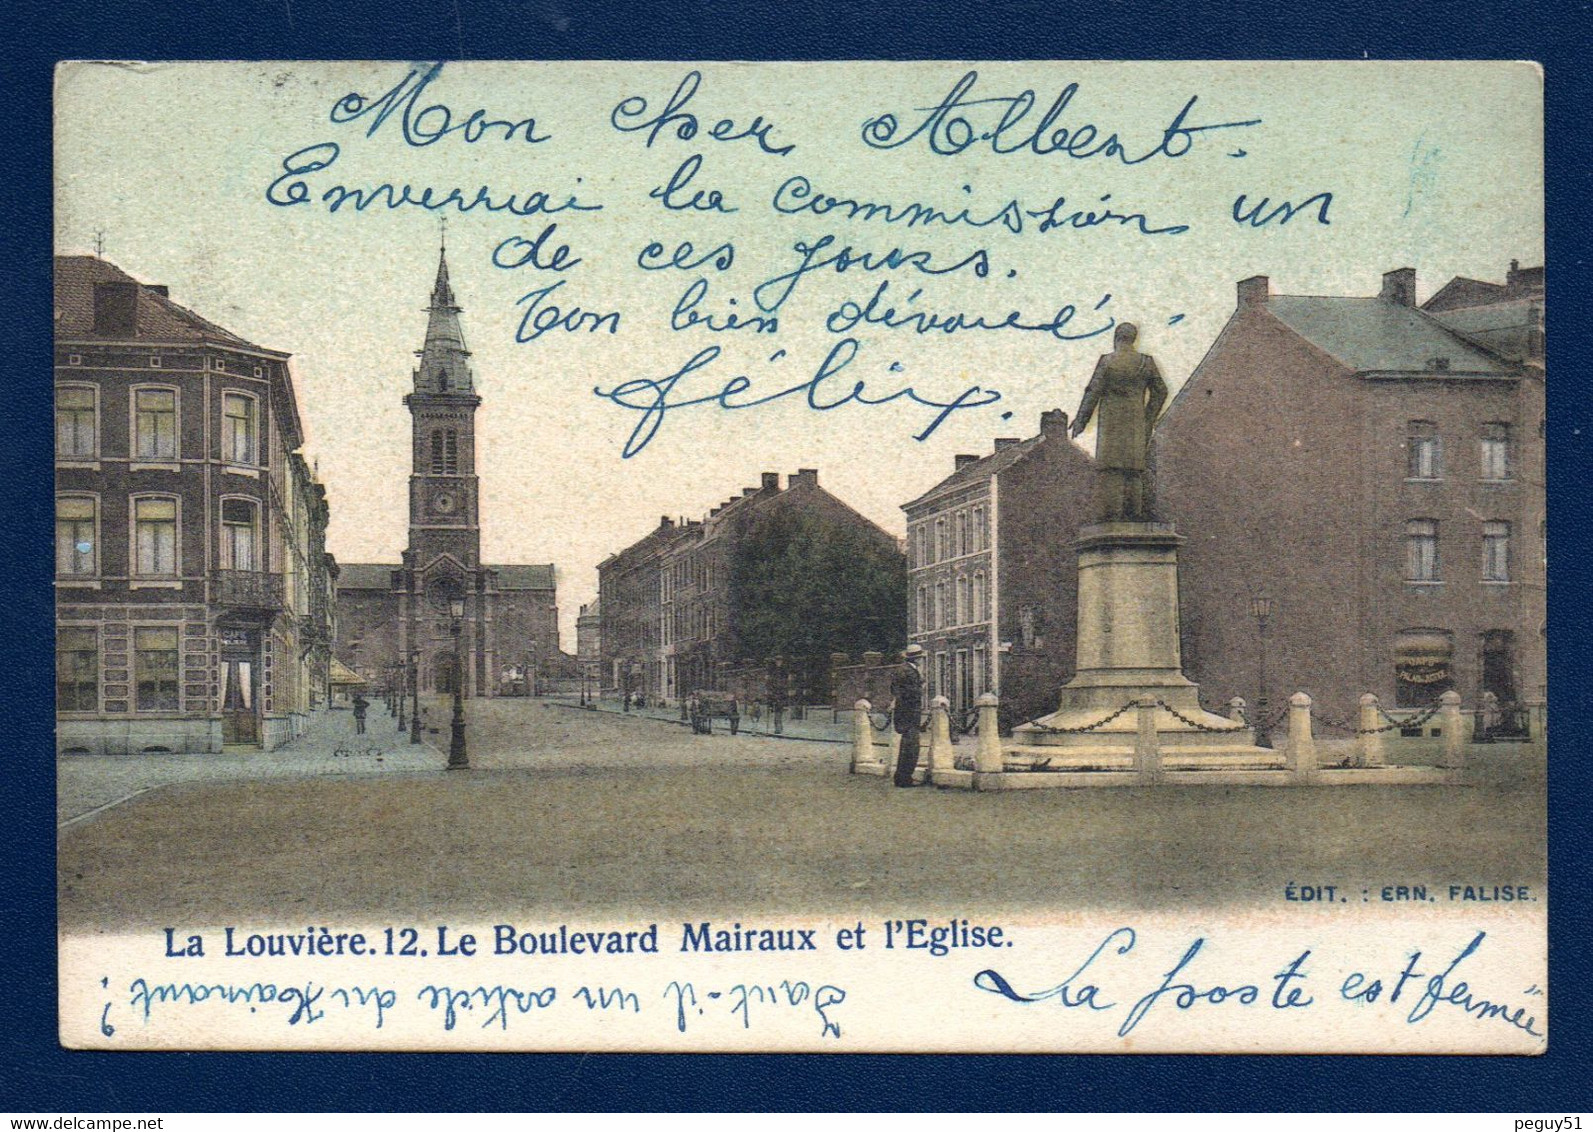 La Louvière. Boulevard Mairaux. Eglise St. Joseph. Café Molière. Statue Amand Mairaux ( V. Rousseau 1890). 1906 - La Louvière